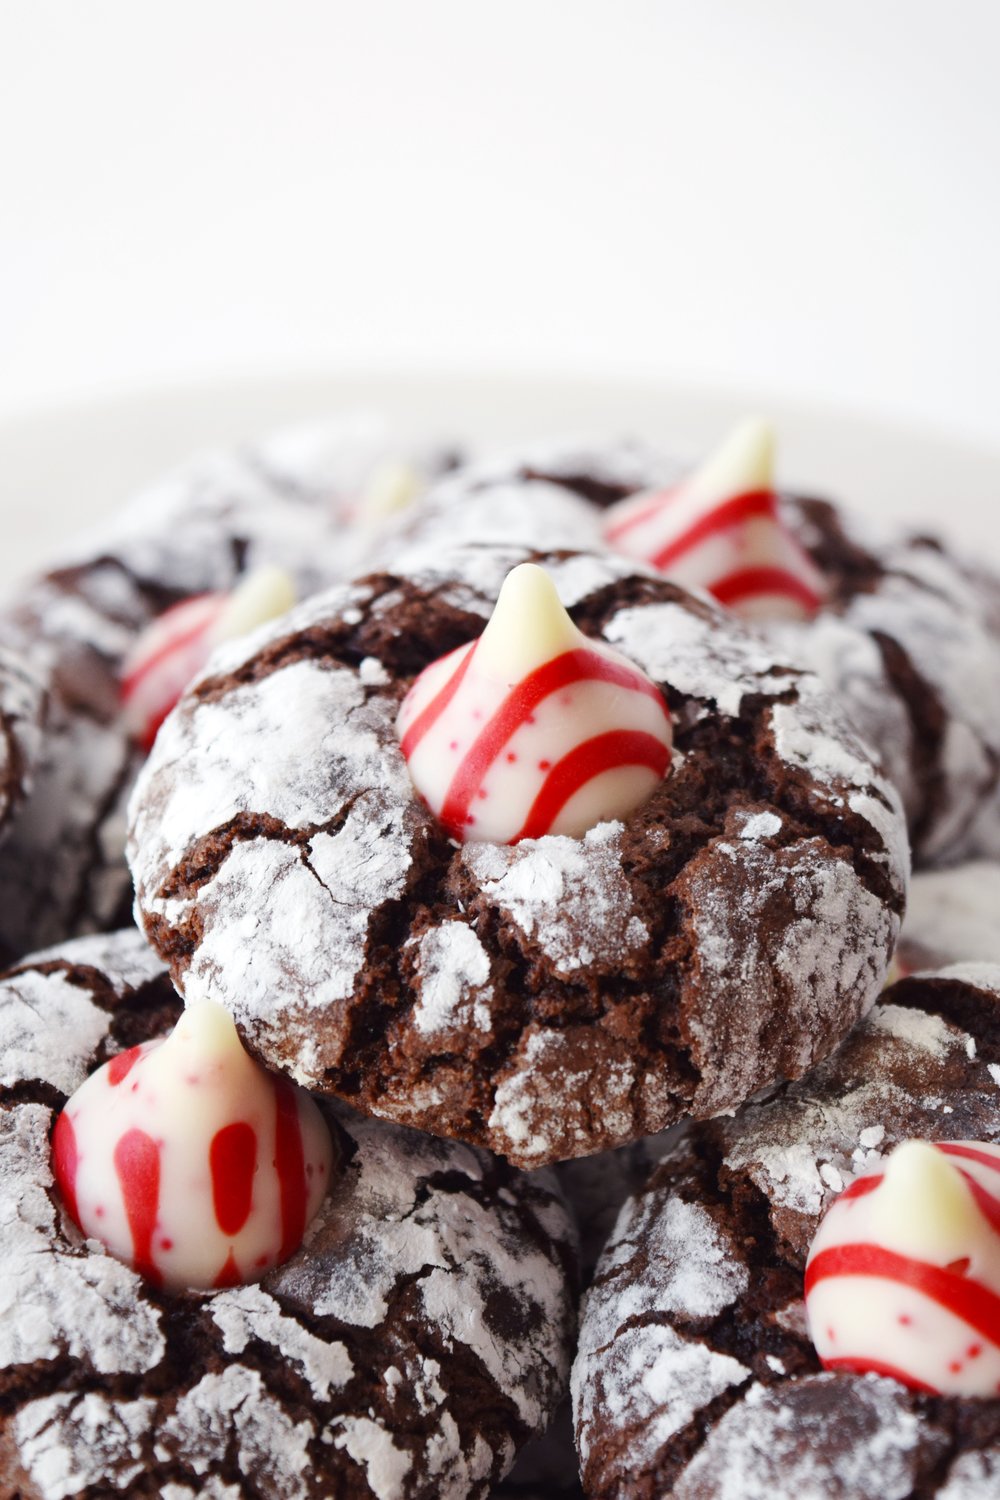 Peppermint Chocolate Crinkle Cookies